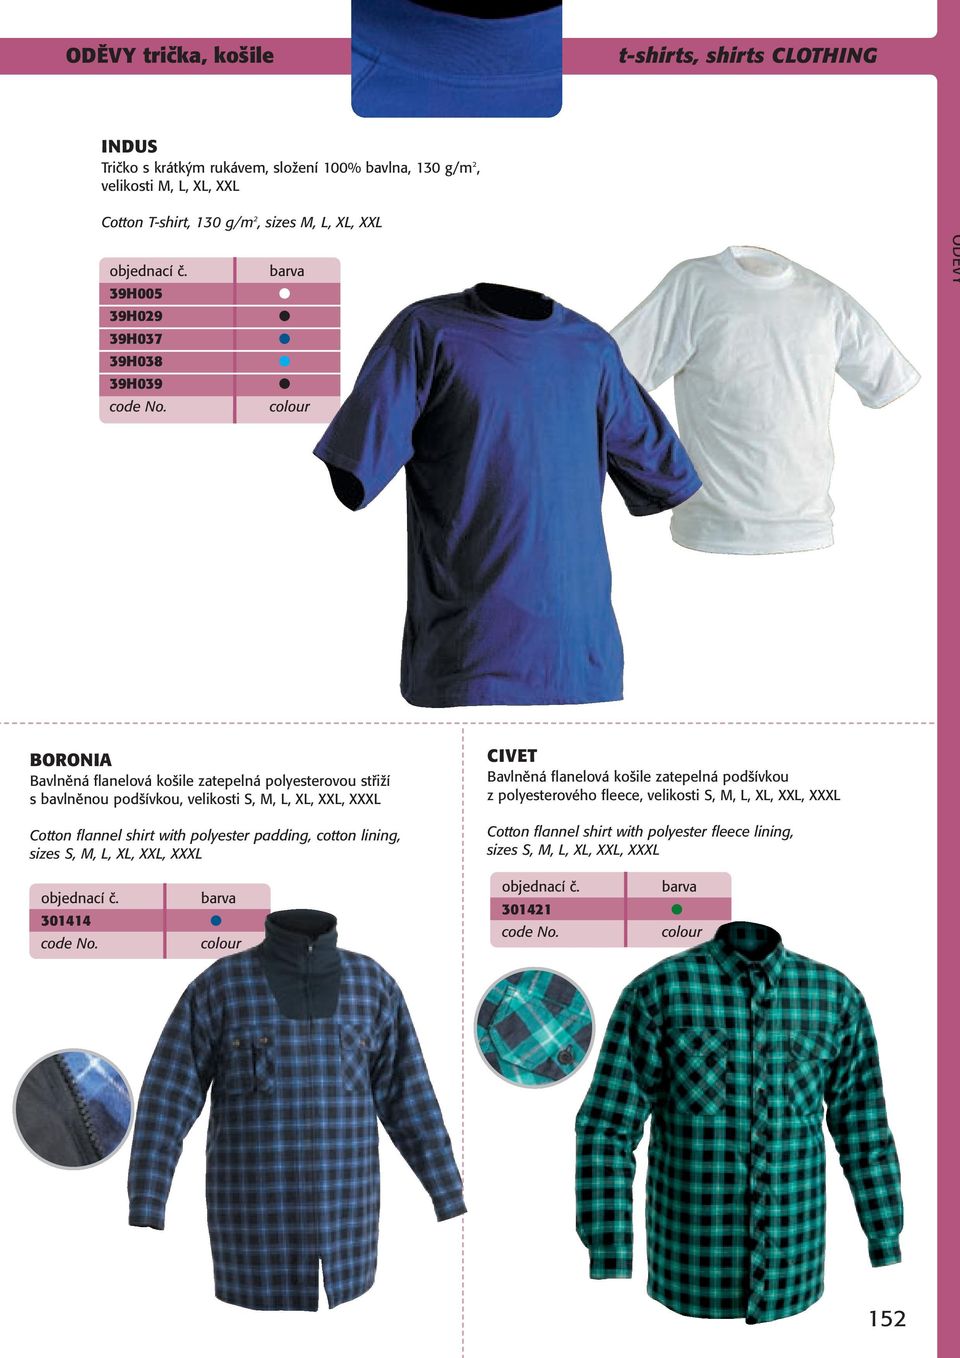 barva colour ODĚVY BORONIA Bavlněná flanelová košile zatepelná polyesterovou střiží s bavlněnou podšívkou, velikosti S, M, L, XL, XXL, XXXL Cotton flannel shirt with